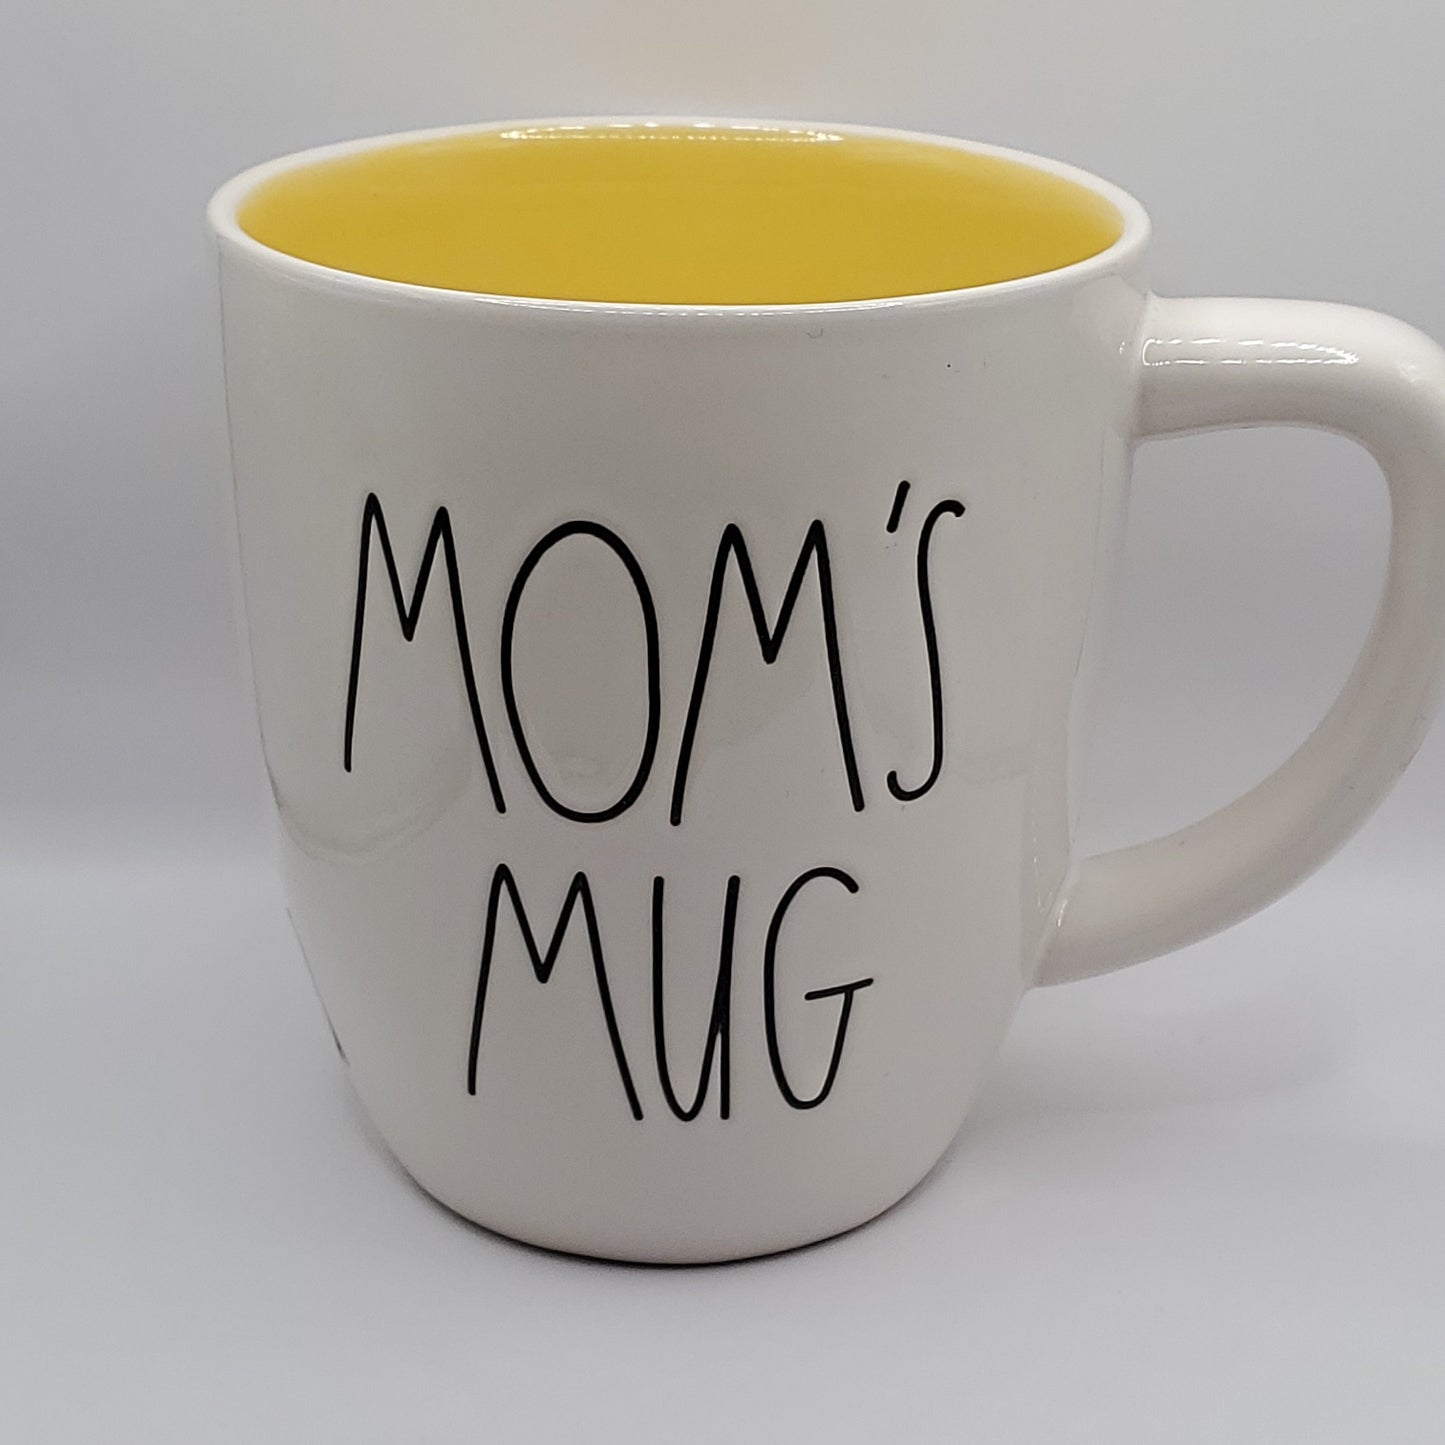 Rae Dunn Mom's Mug coffee mug